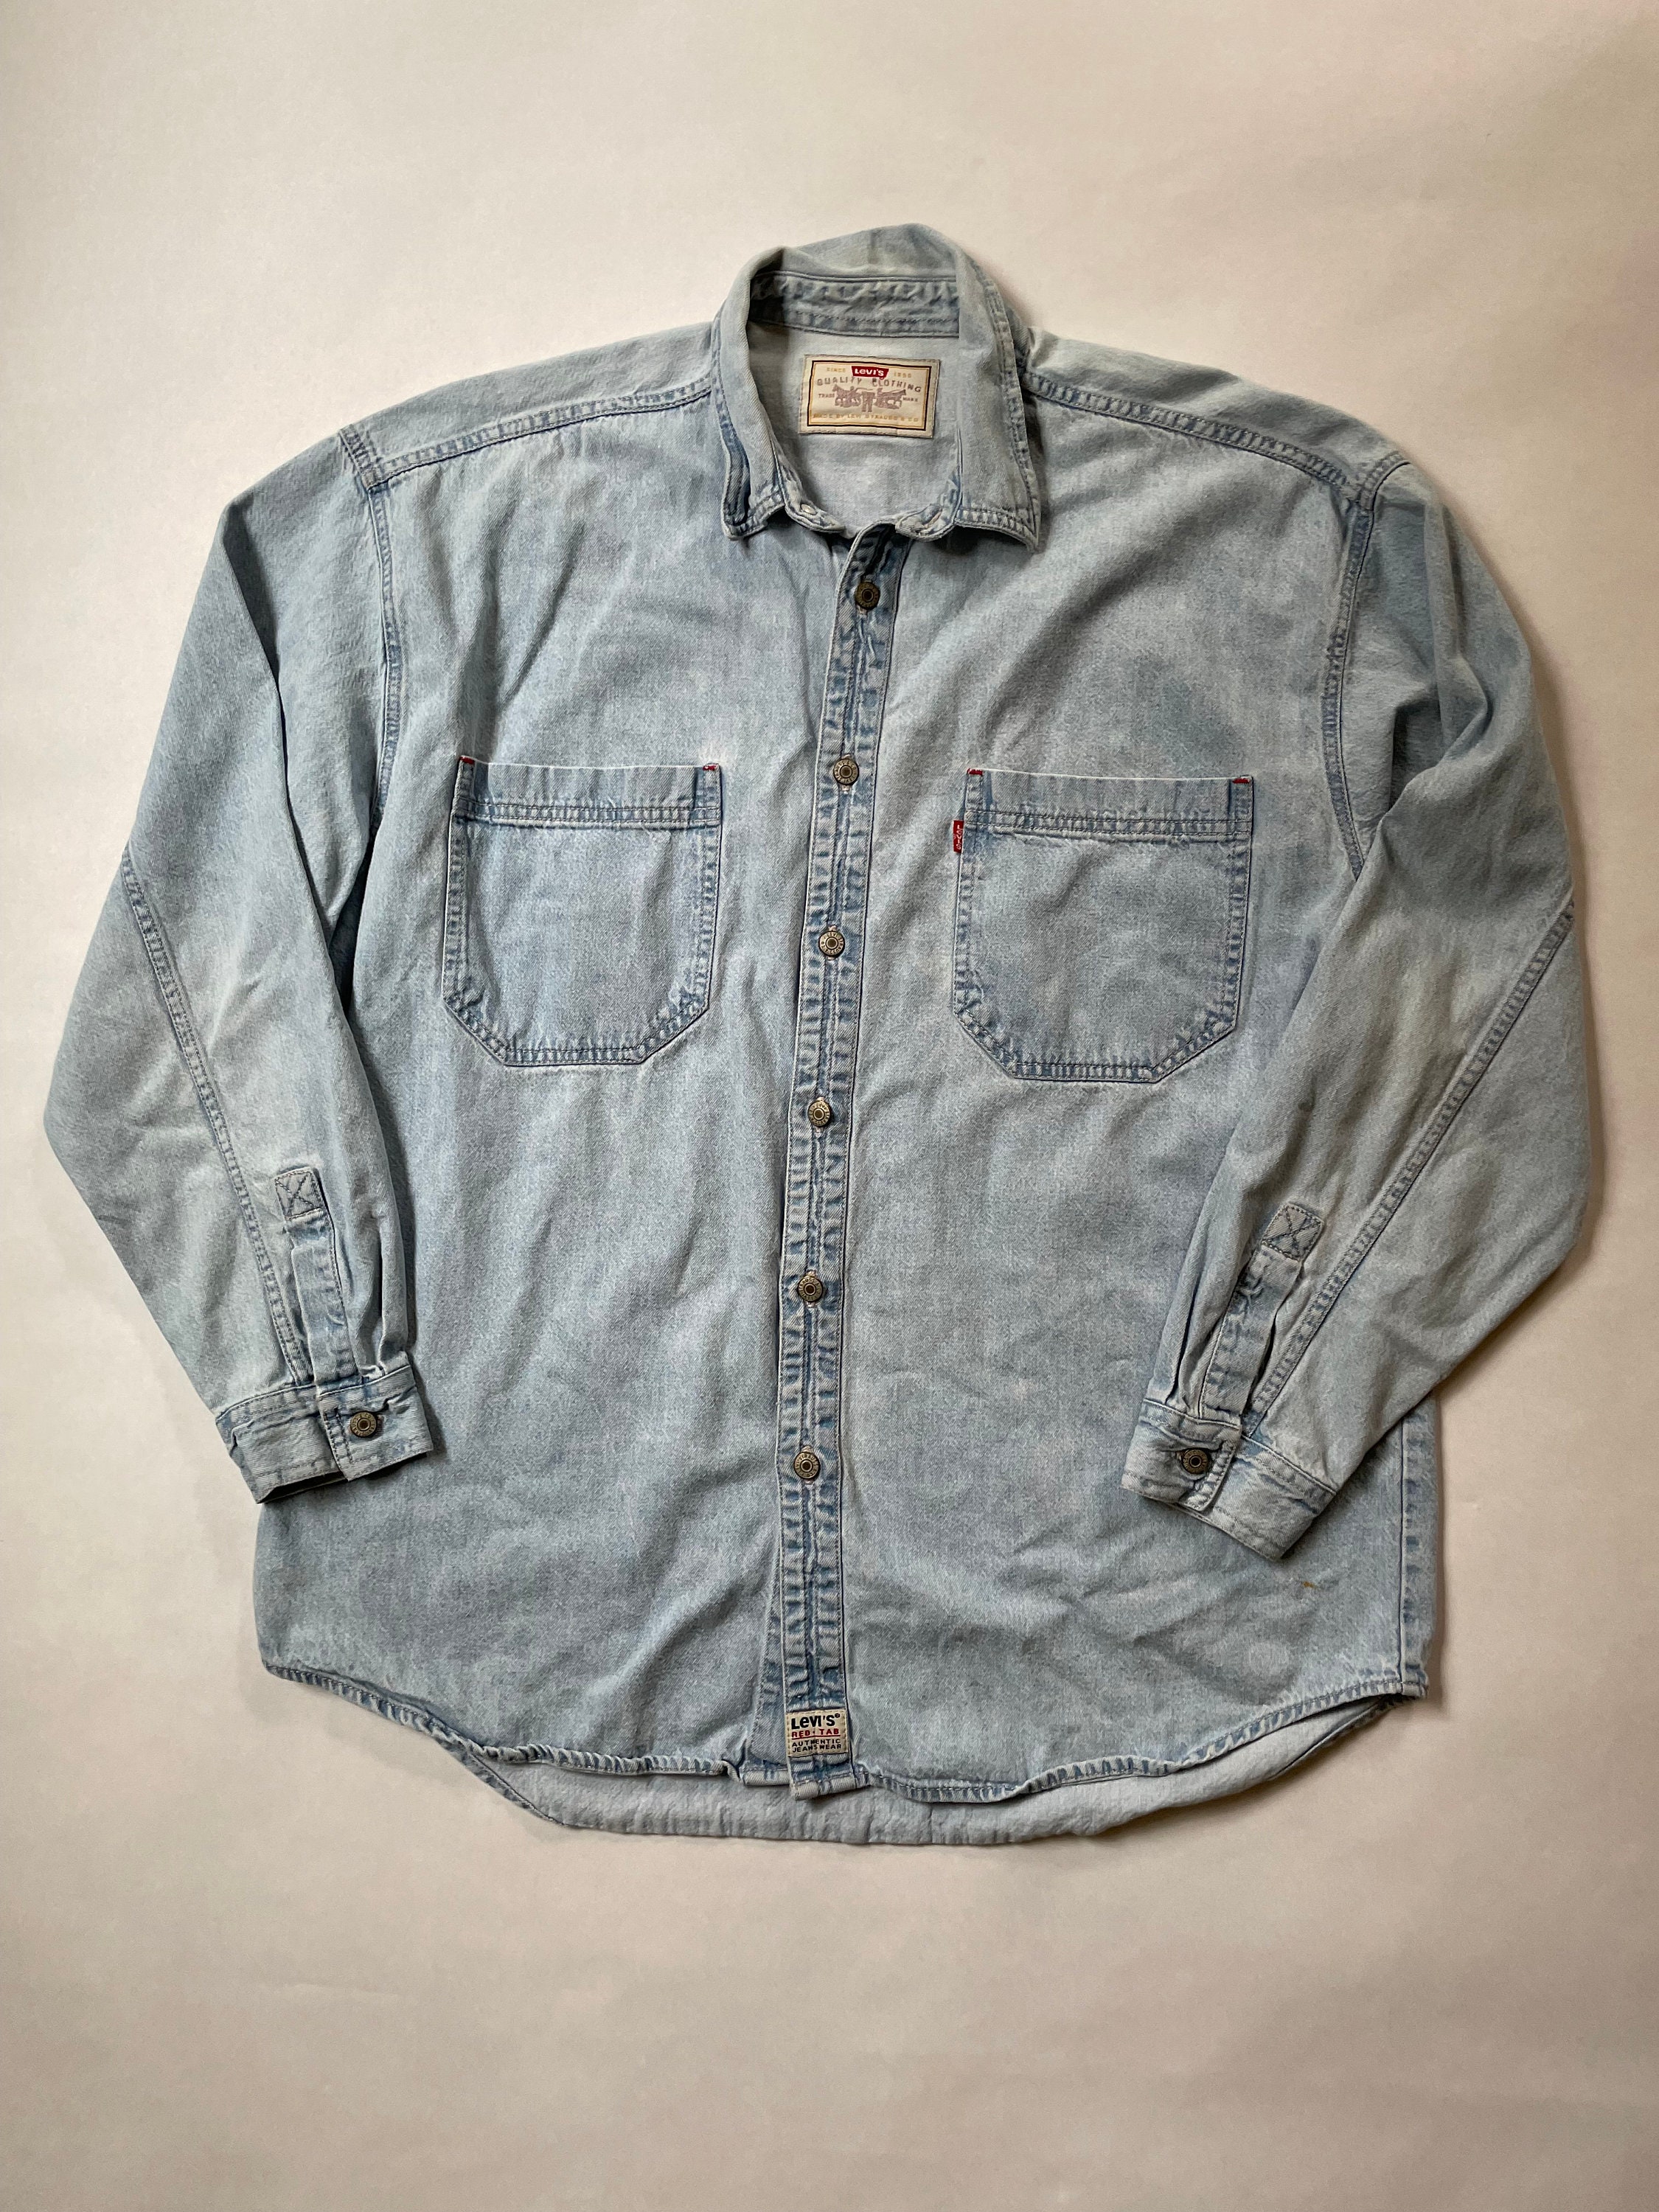 1990s Levis Light Wash Button up Denim Shirt Size Large - Etsy